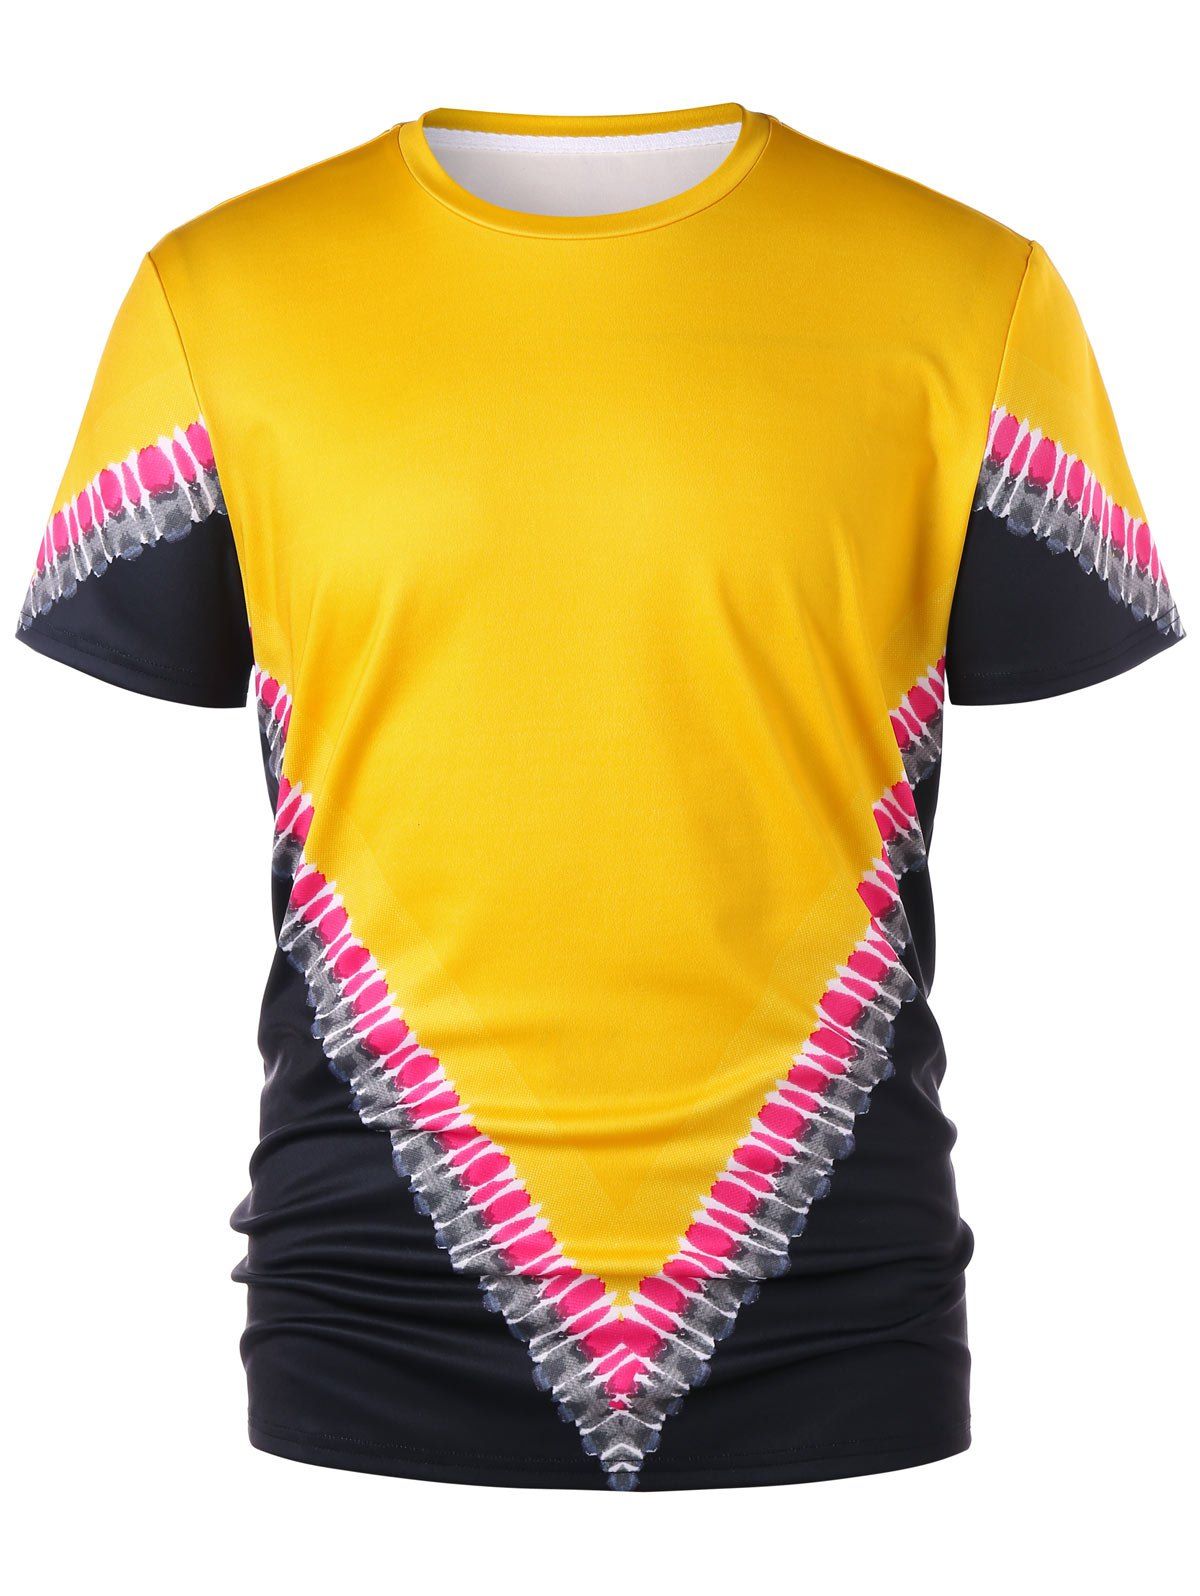 T-Shirt à Manches Courtes avec Imprimé Blocs de Couleurs - Jaune Clair XL